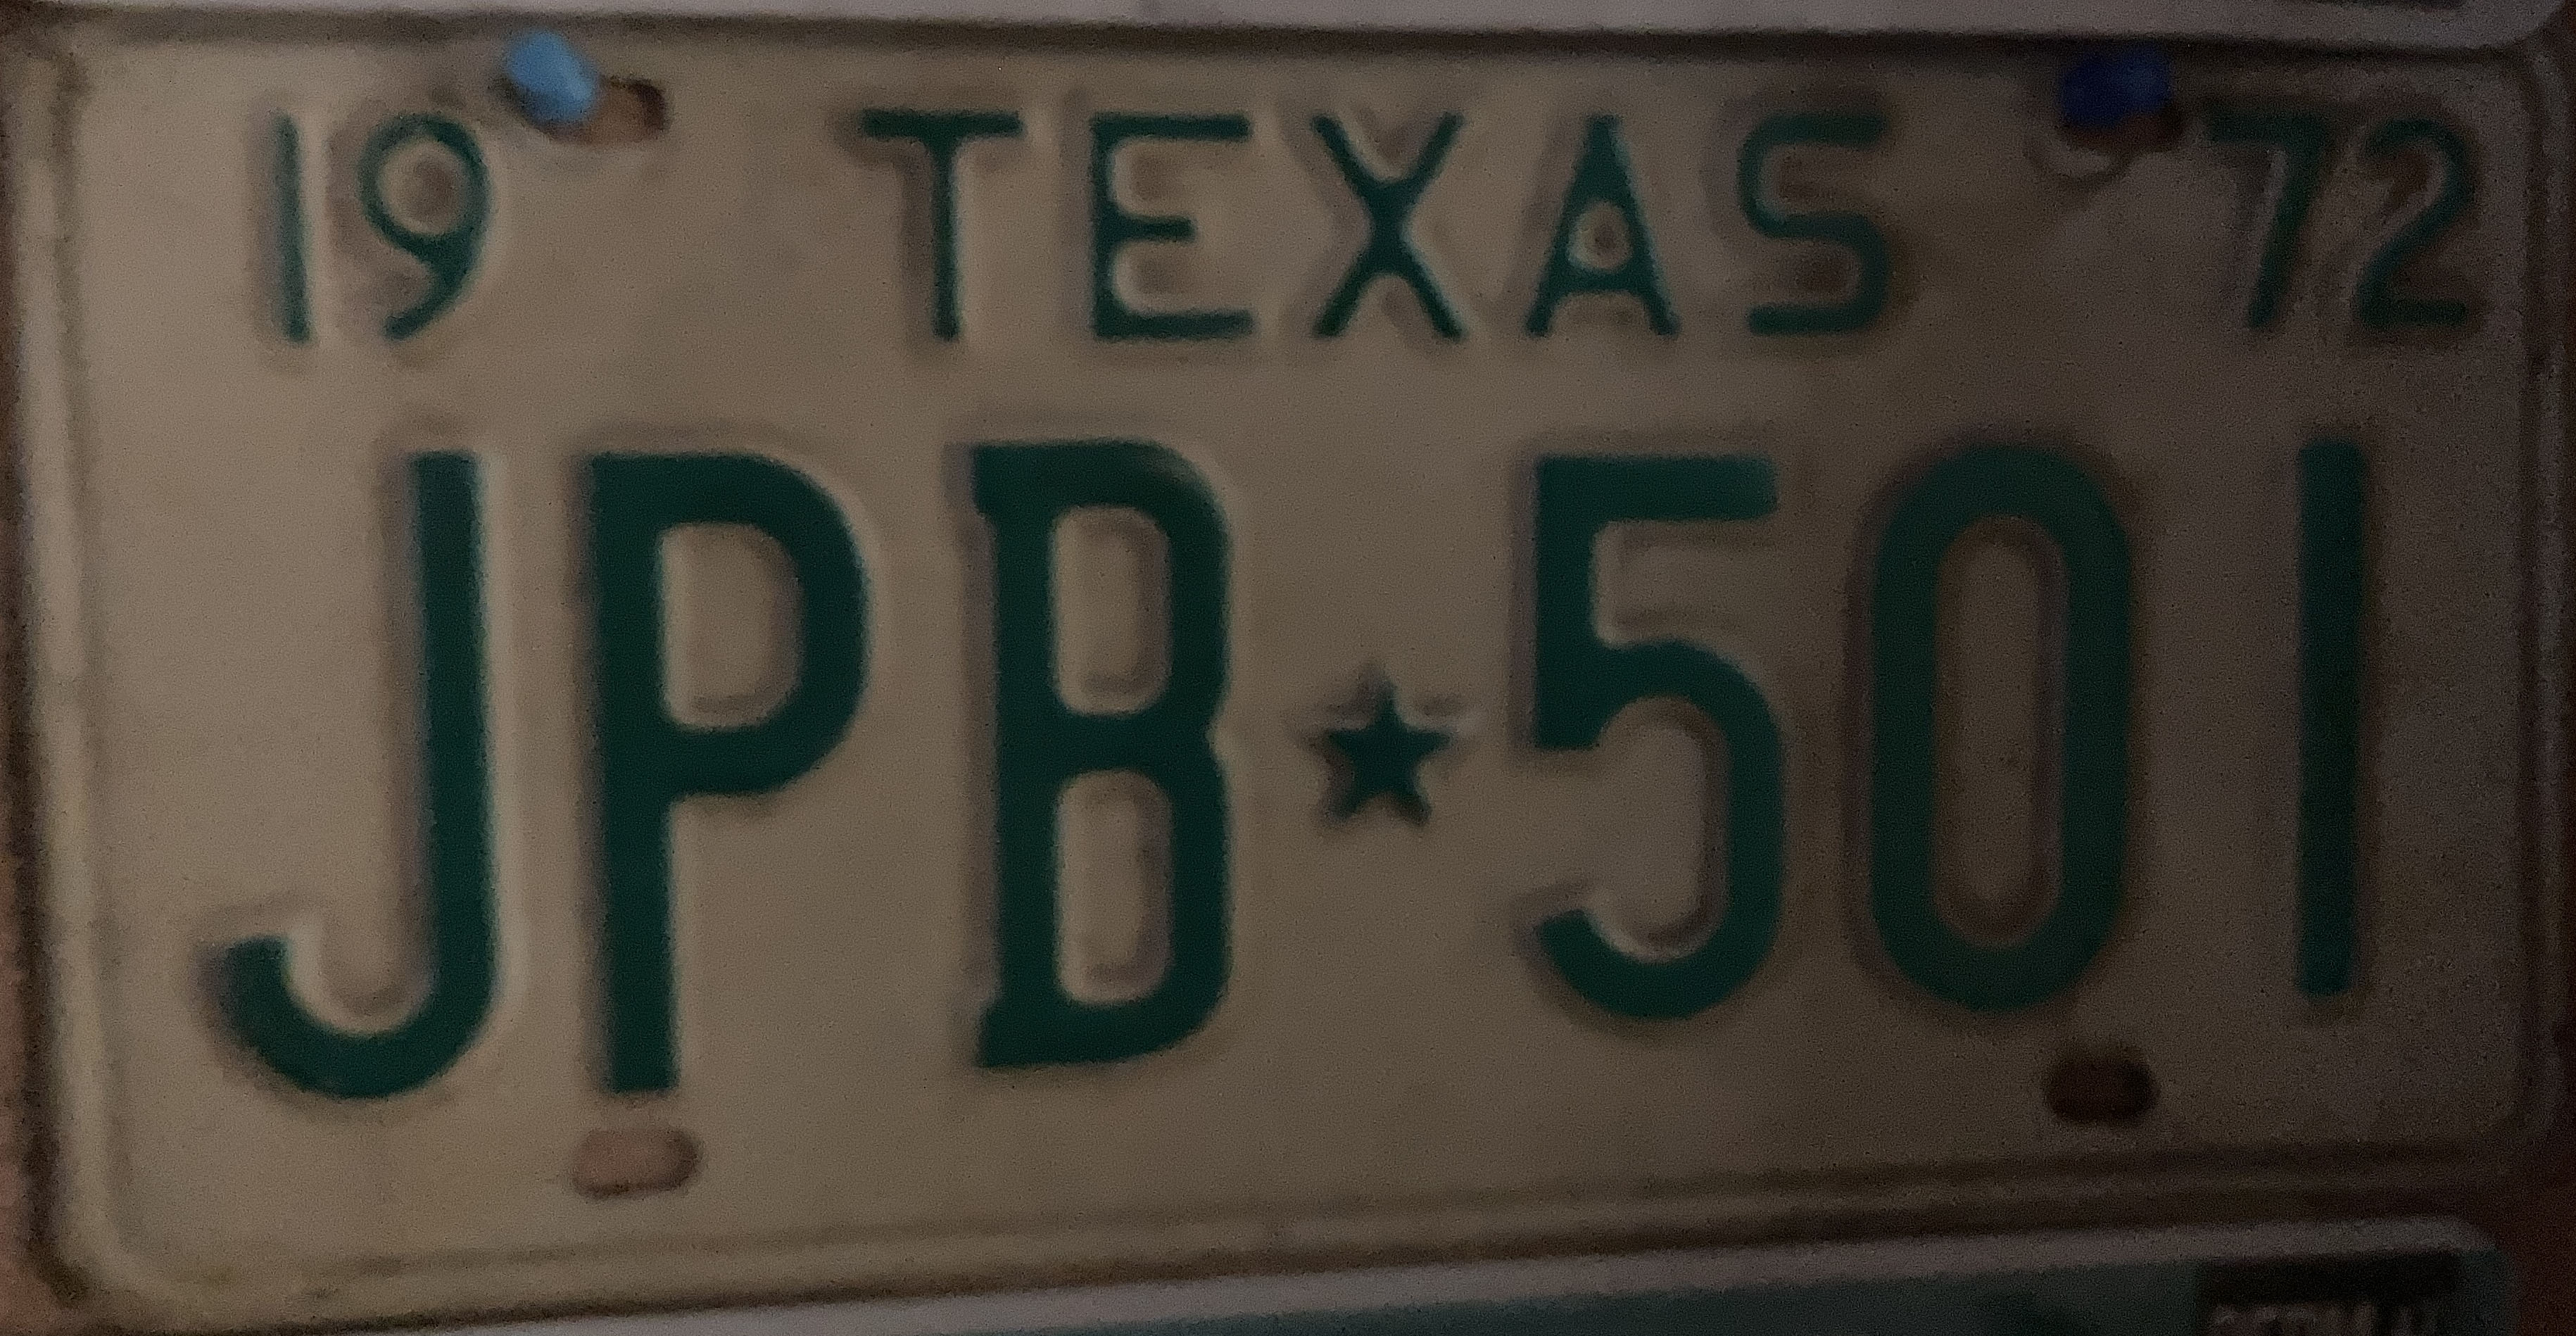 1972 Arizona US Plate